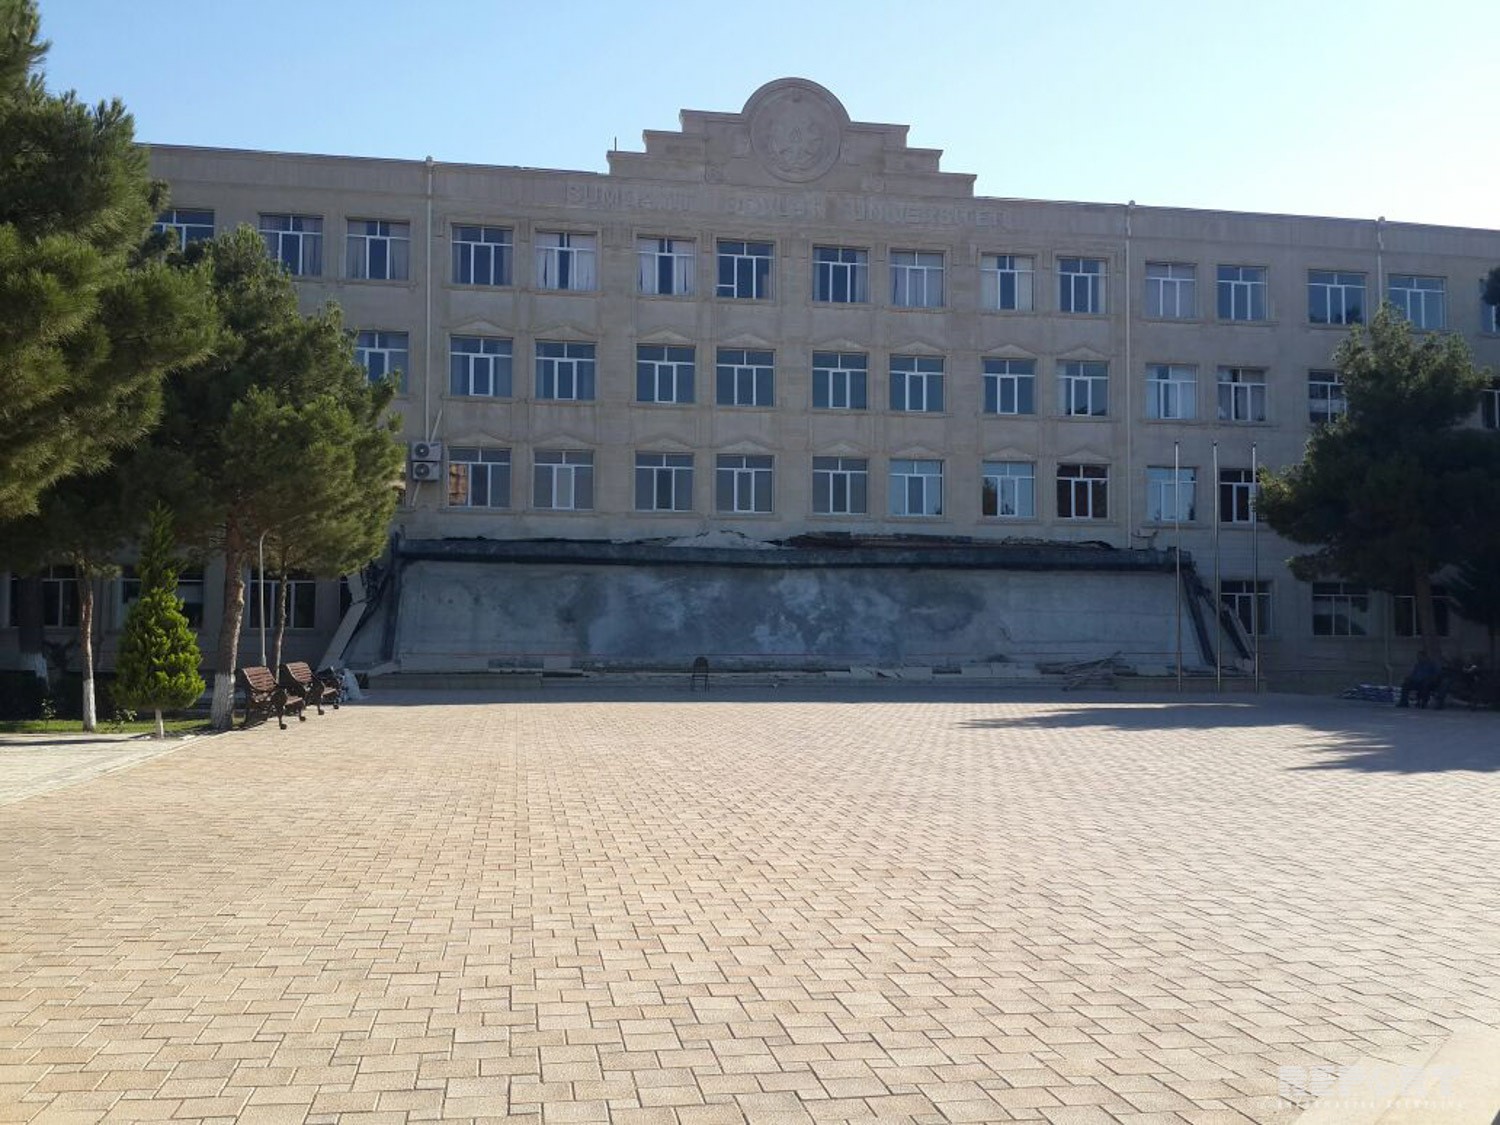 Azərbaycanda bu universitetin binasının girişi UÇDU:   Ölən və yaralanan var? (FOTOLAR)